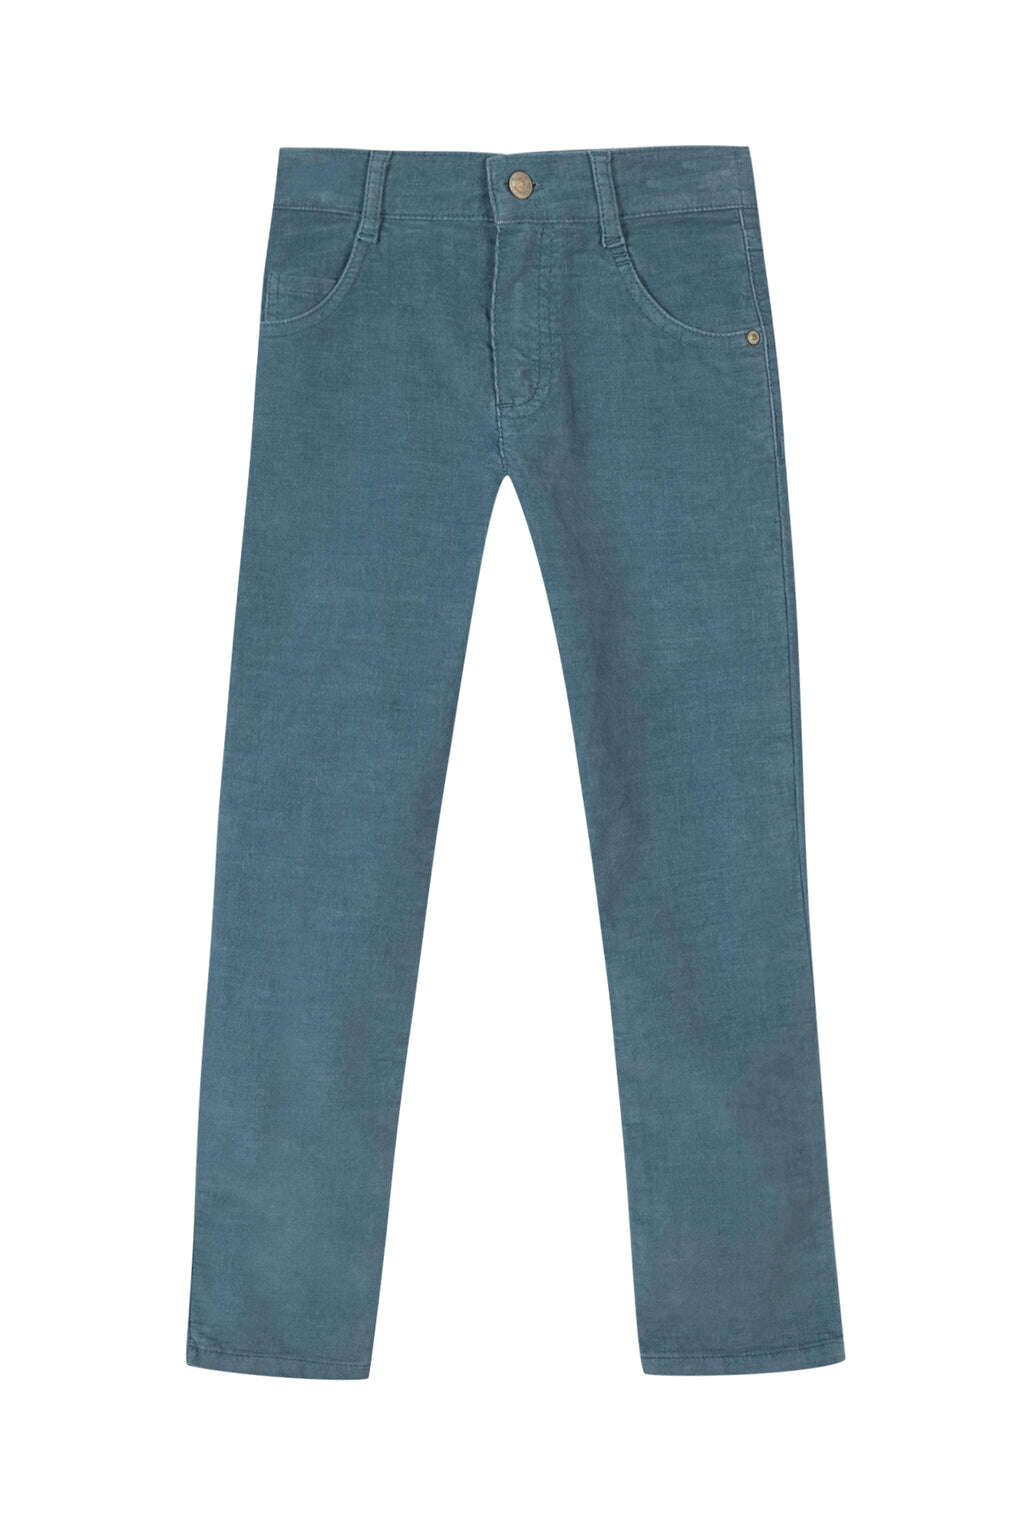 Pantalon - Indigo velours côtelé milleraies